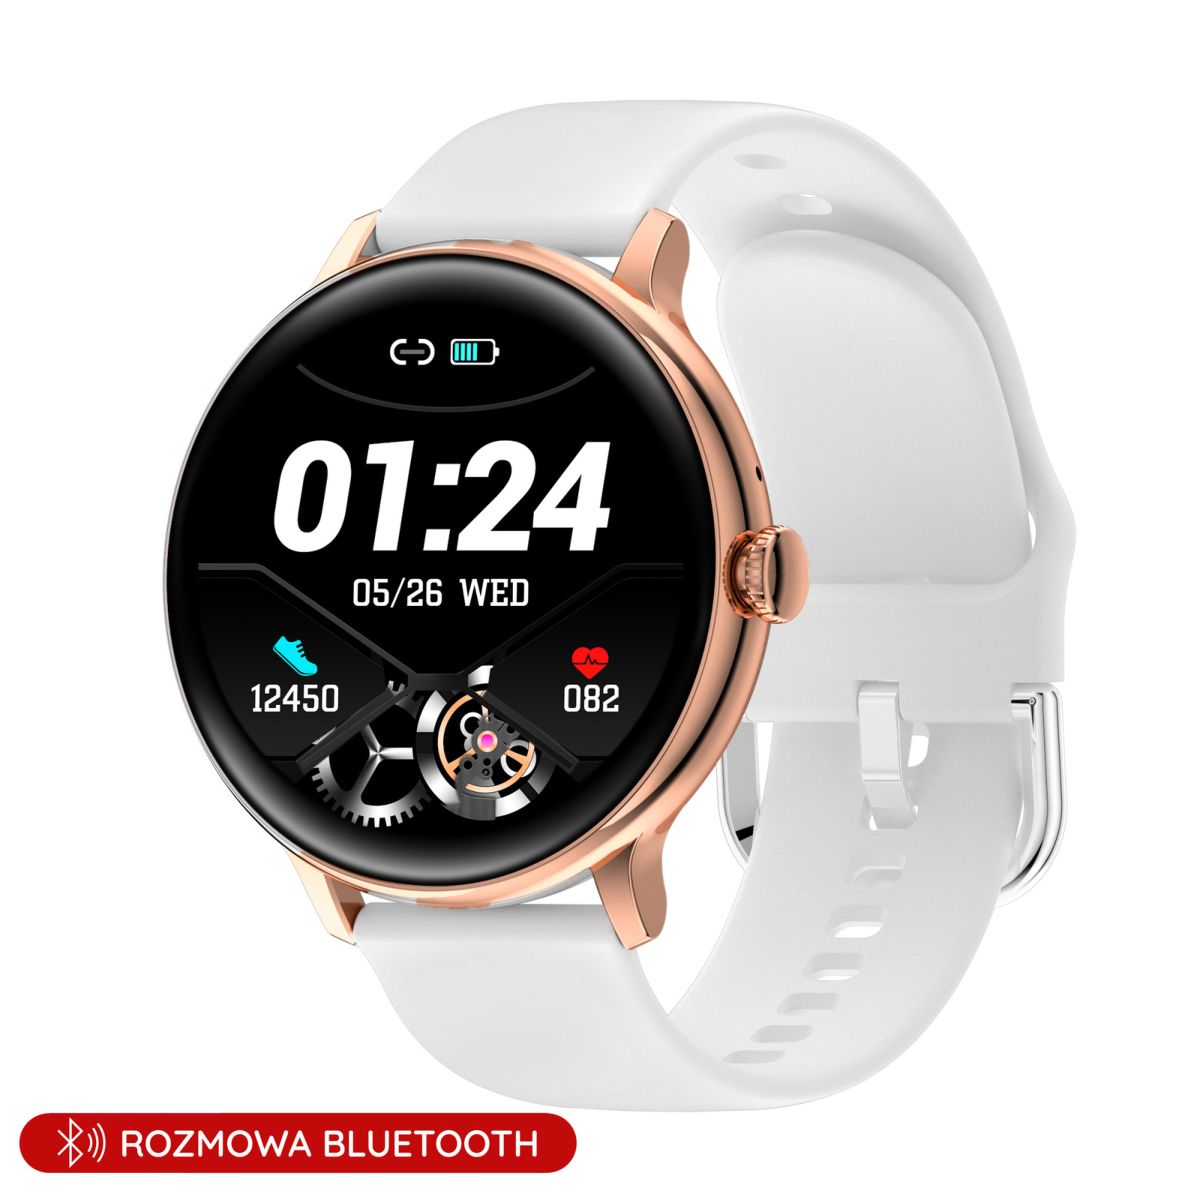 Damski smartwatch z funkcją rozmowy biały Pacific 37-04 Sport Kalorie Puls  Termometr - 198,00 zł - Otozegarki.pl